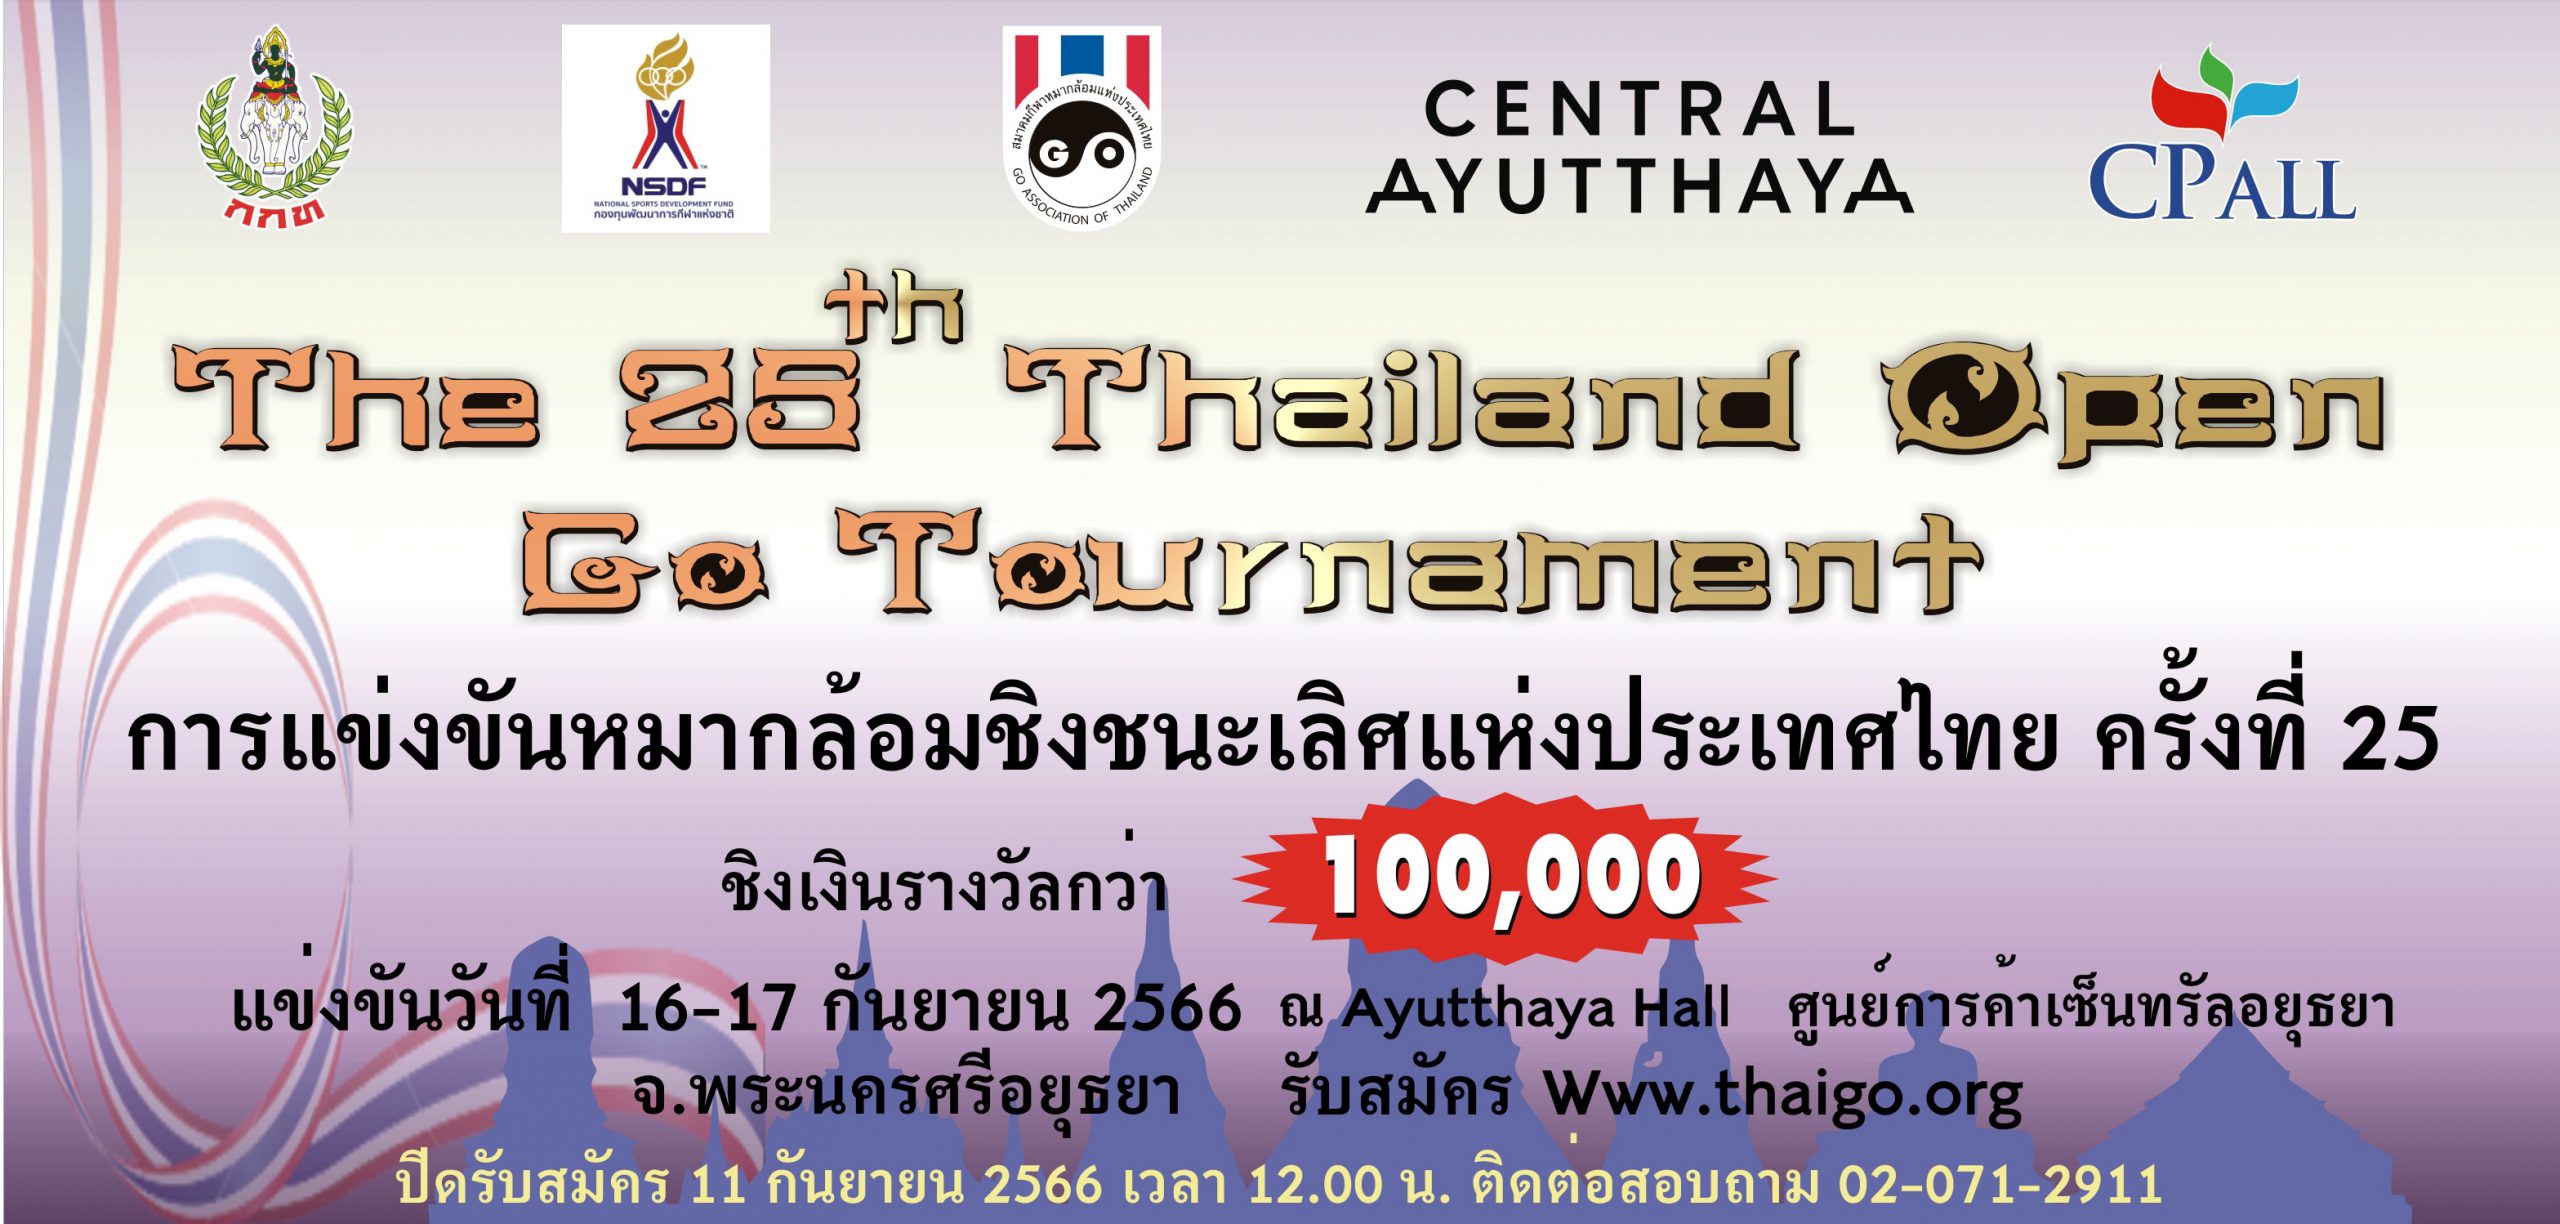 รับสมัครการแข่งขันหมากล้อมชิงชนะเลิศแห่งประเทศไทยครั้งที่ 25 (The 25th Thailand Open Go Tournament)